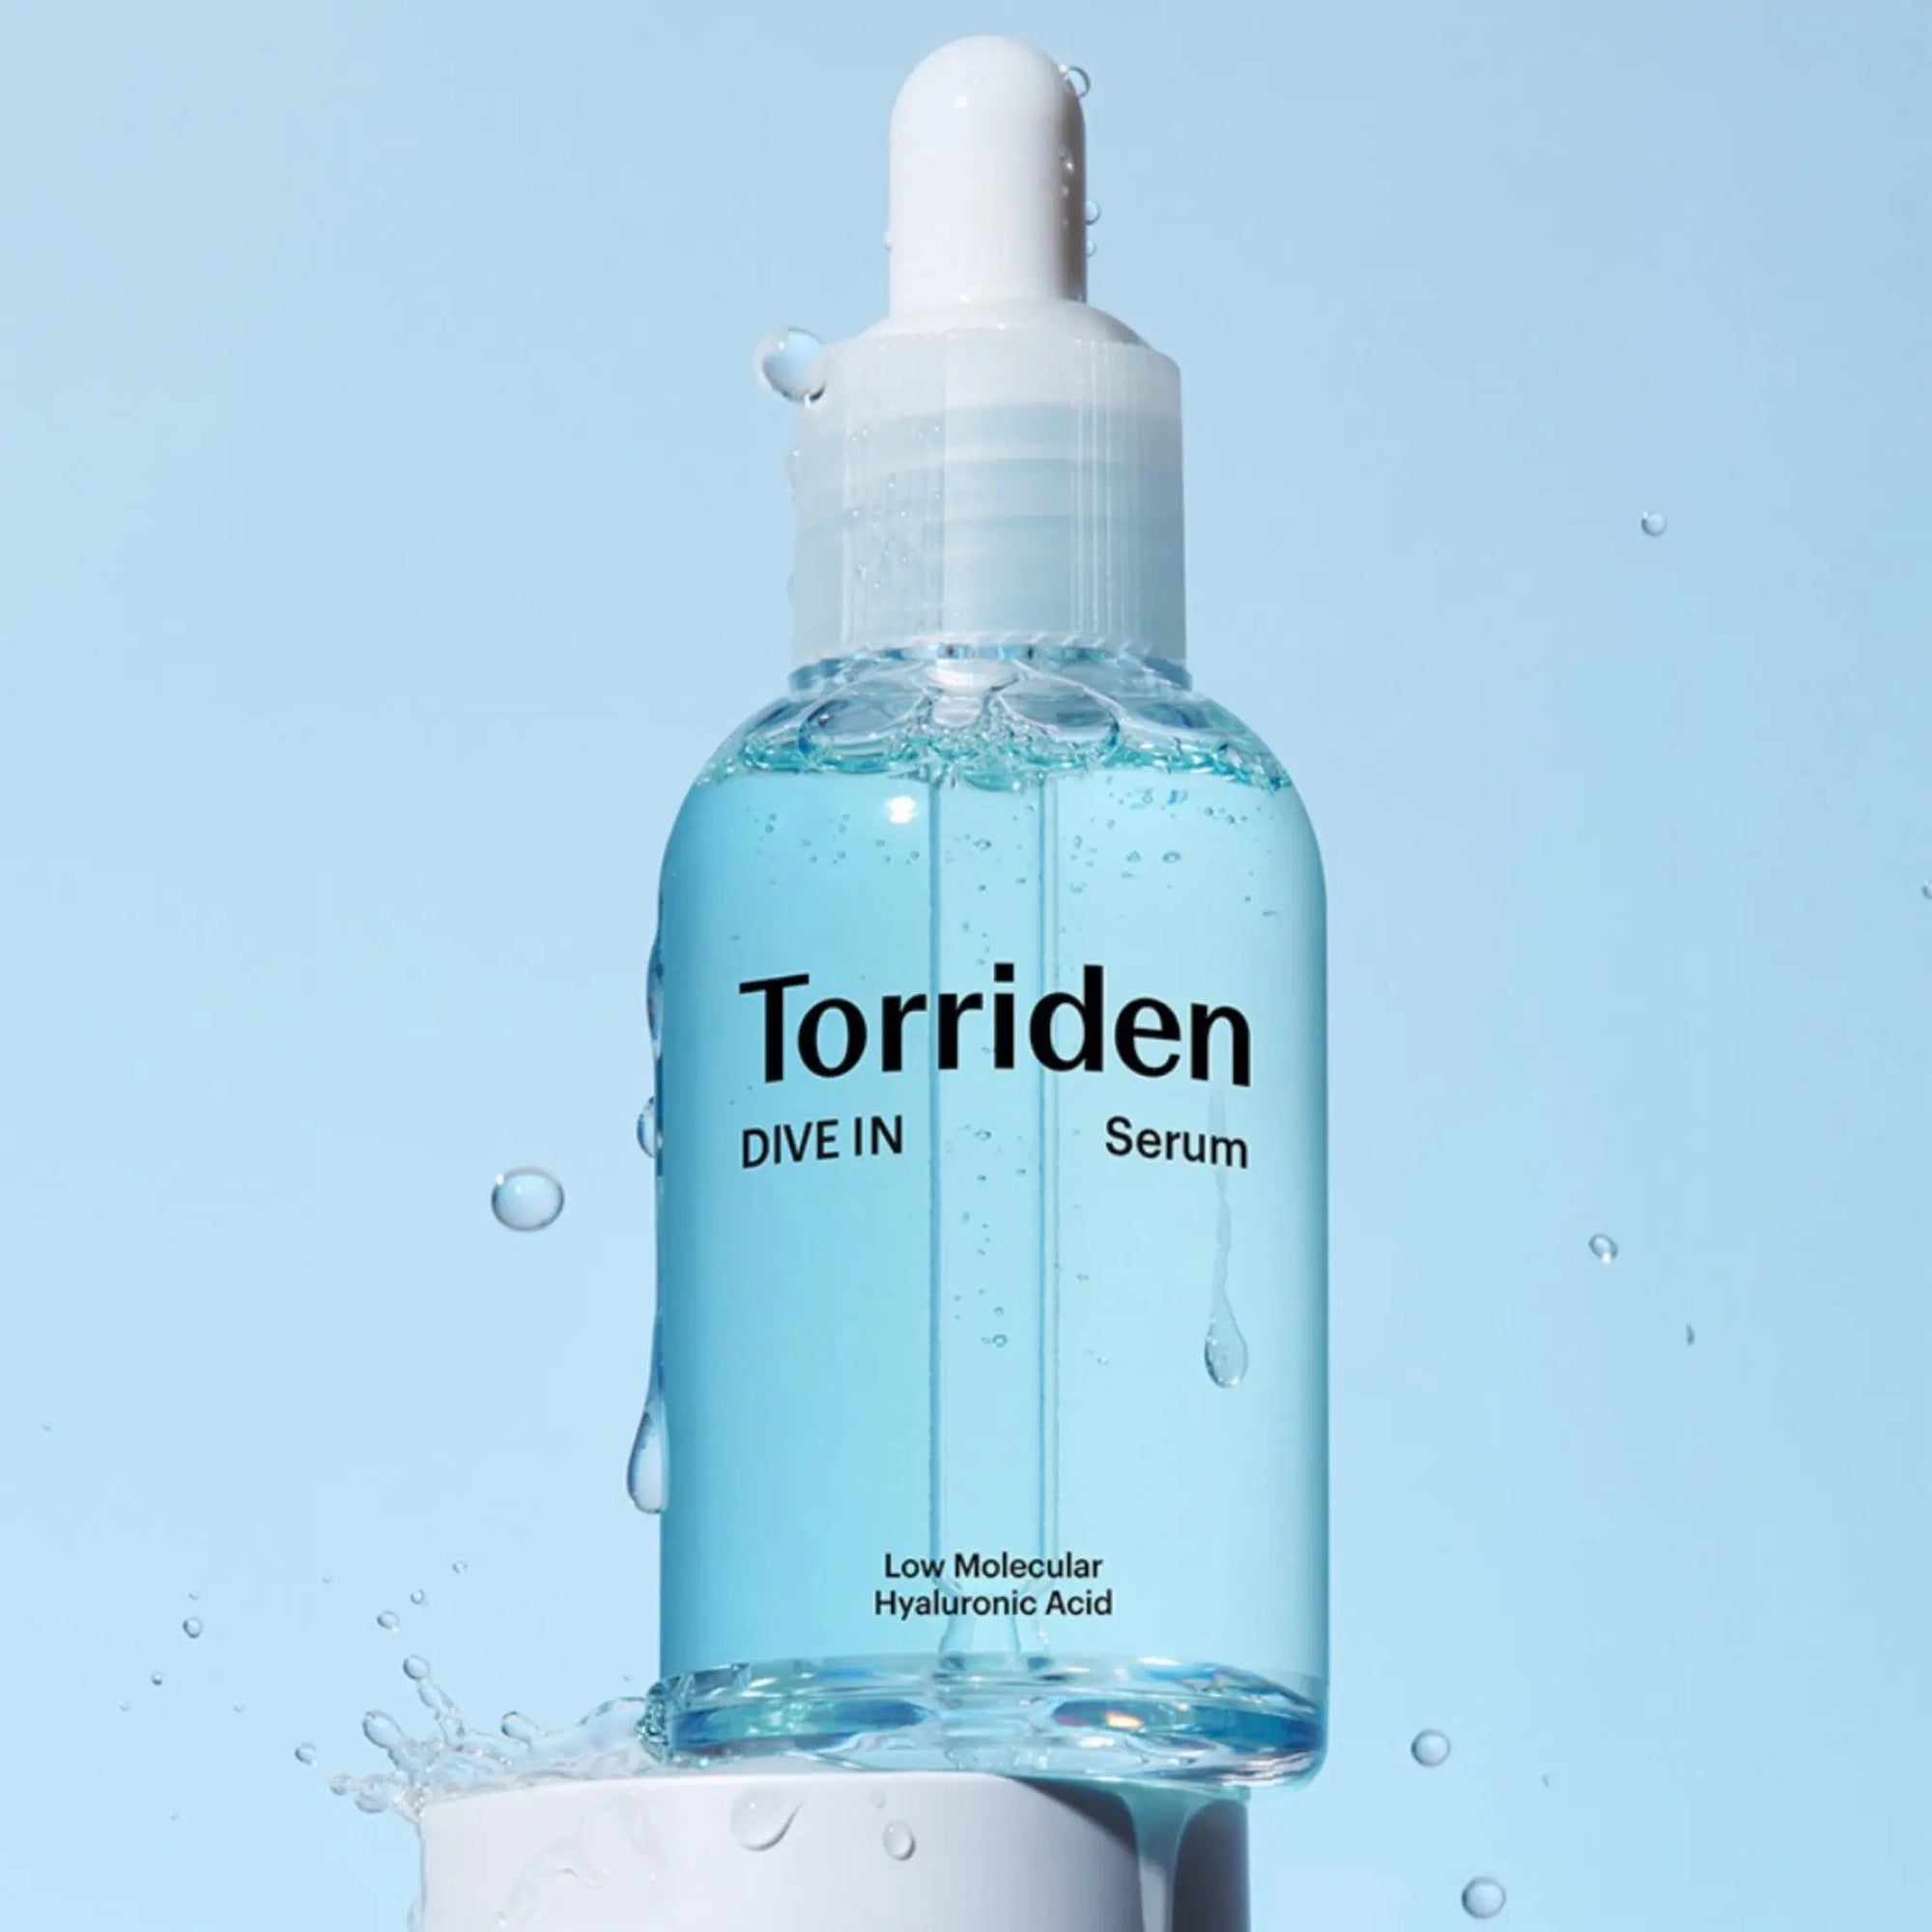 Torriden - Dive-In Low Molecular Hyaluronic Acid Serum 50mL Torriden